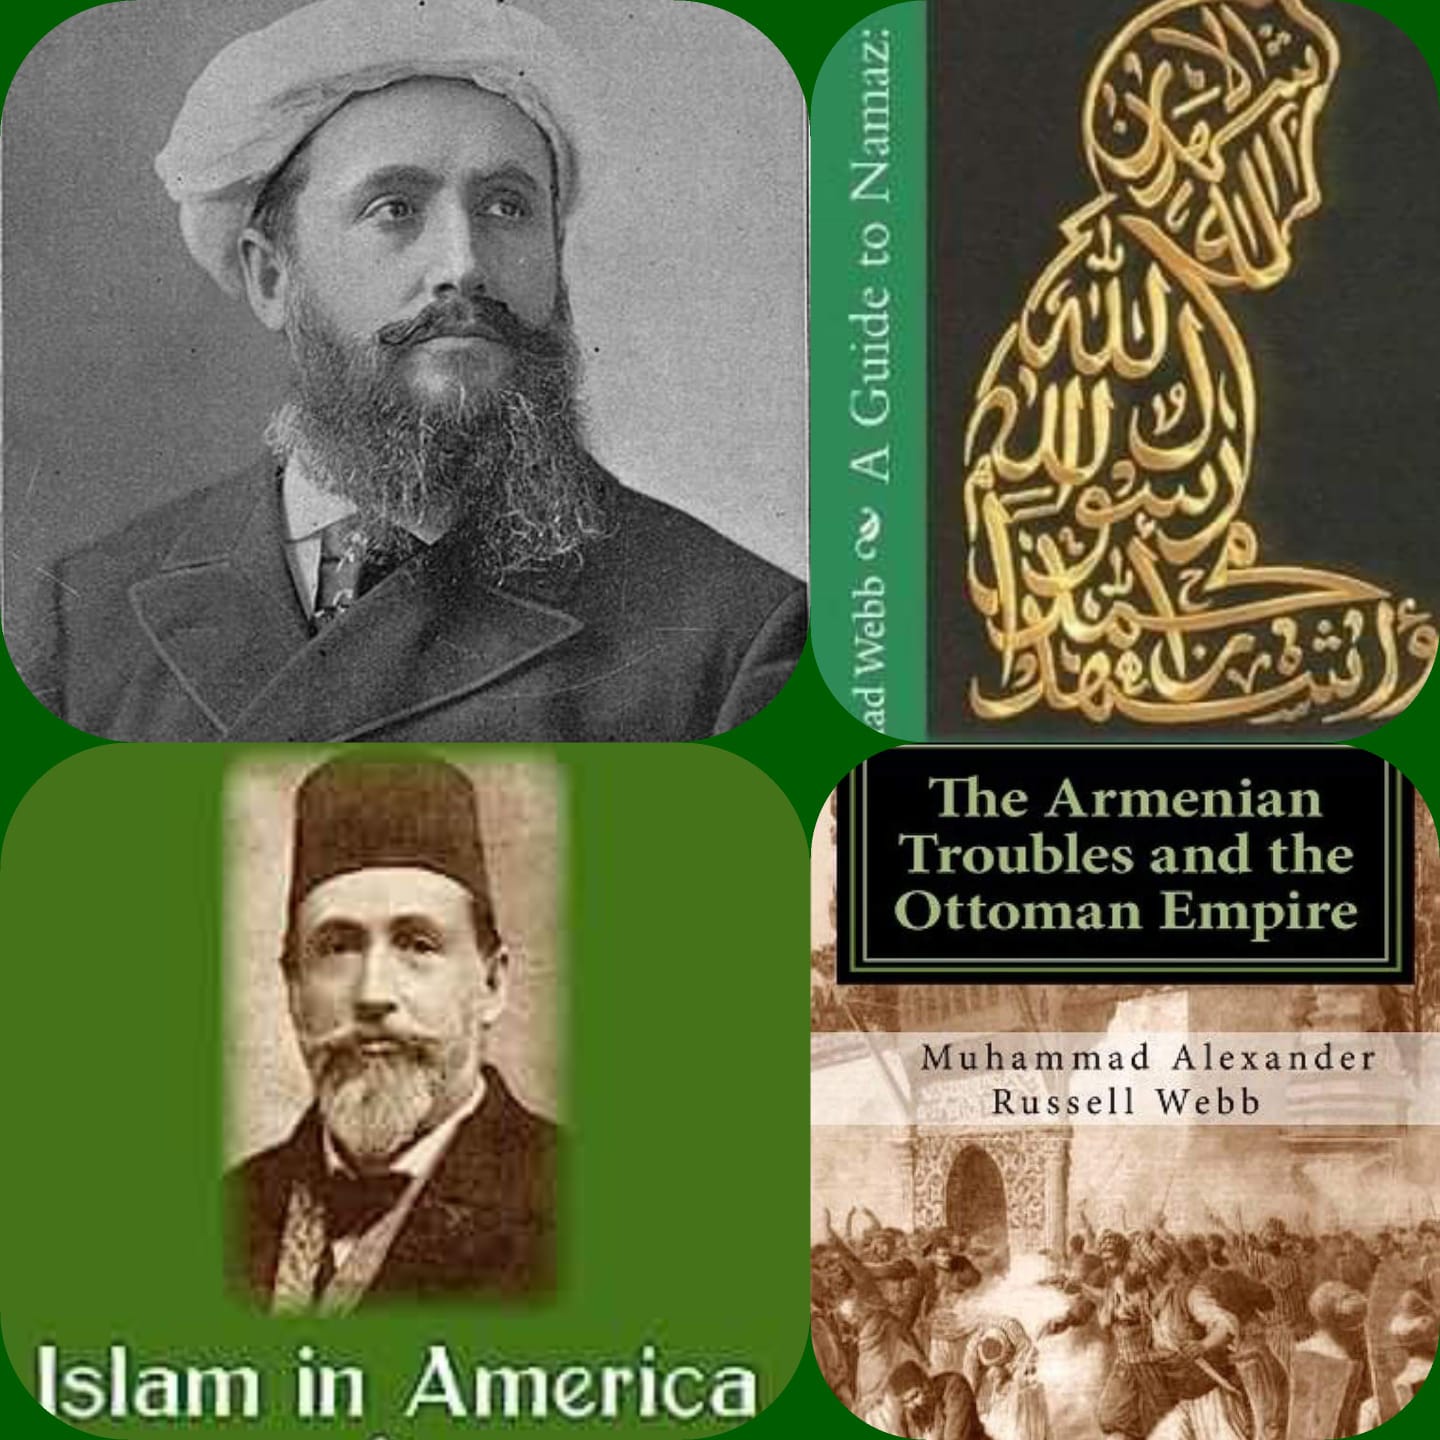 وضع الصحفي الأمريكي "ألكسندر راسل ويب"، البذور الأولى للدعوة والصحافة الإسلامية في الولايات المتحدة في أواخر القرن التاسع عشر.